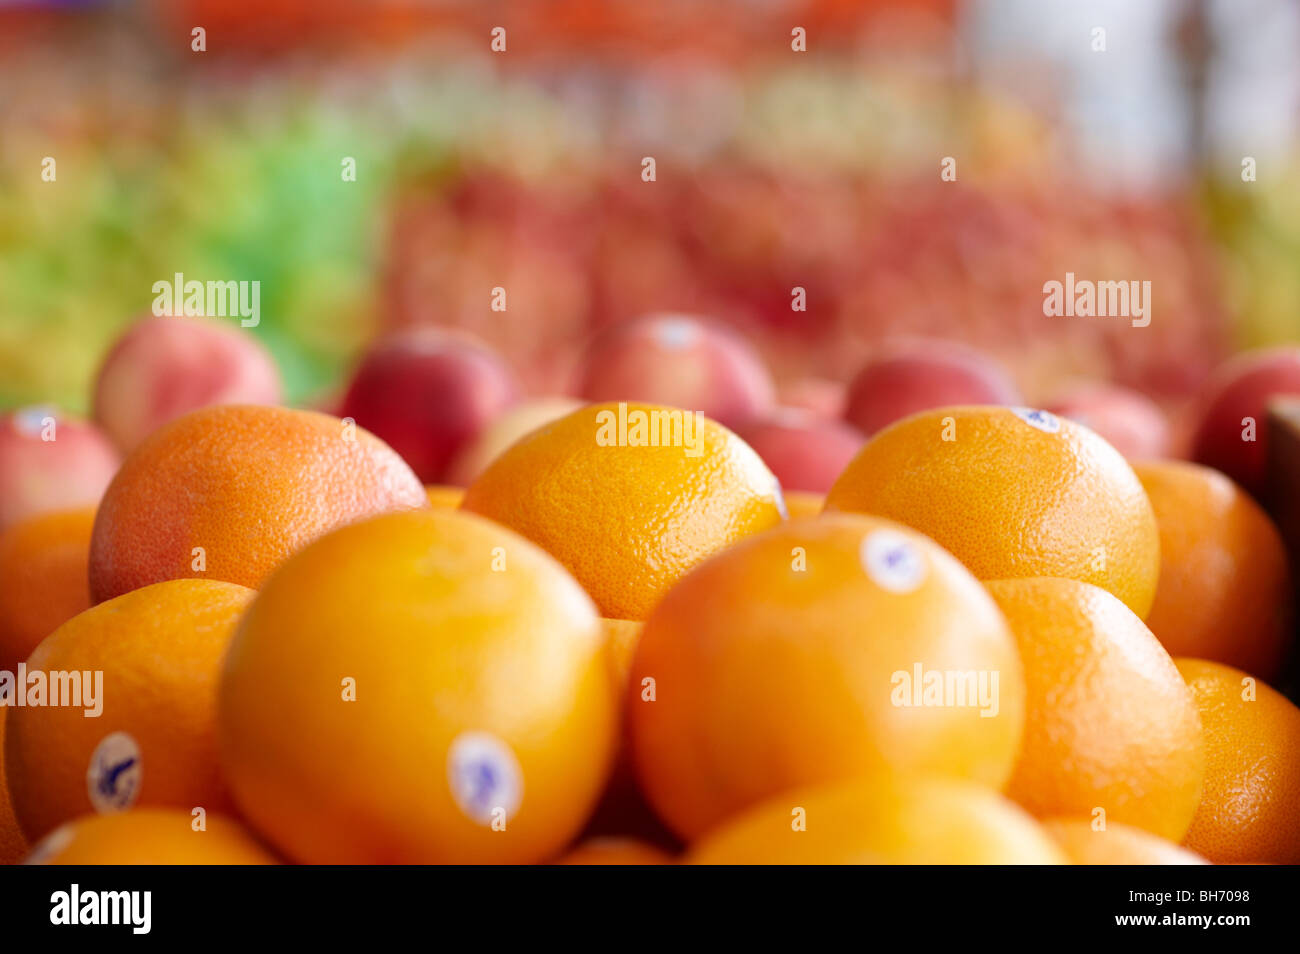 Marché de fruits à l'orange Banque D'Images